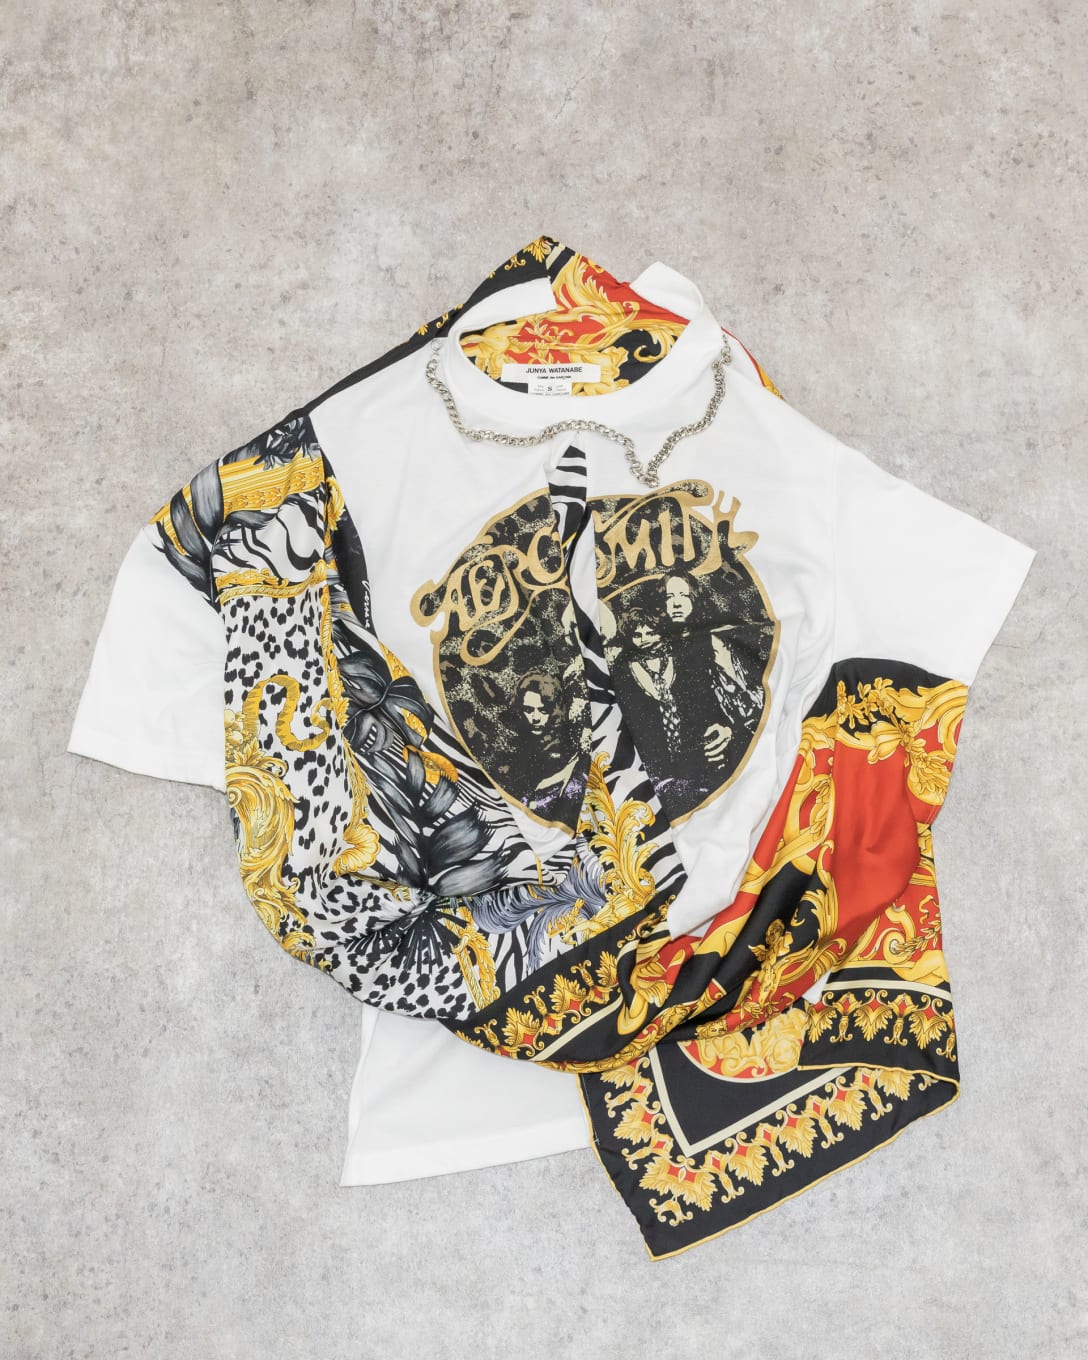 「ジュンヤ ワタナベ」の 「ヴェルサーチェ」のスカーフ付きTシャツ Image by FASHIONSNAP